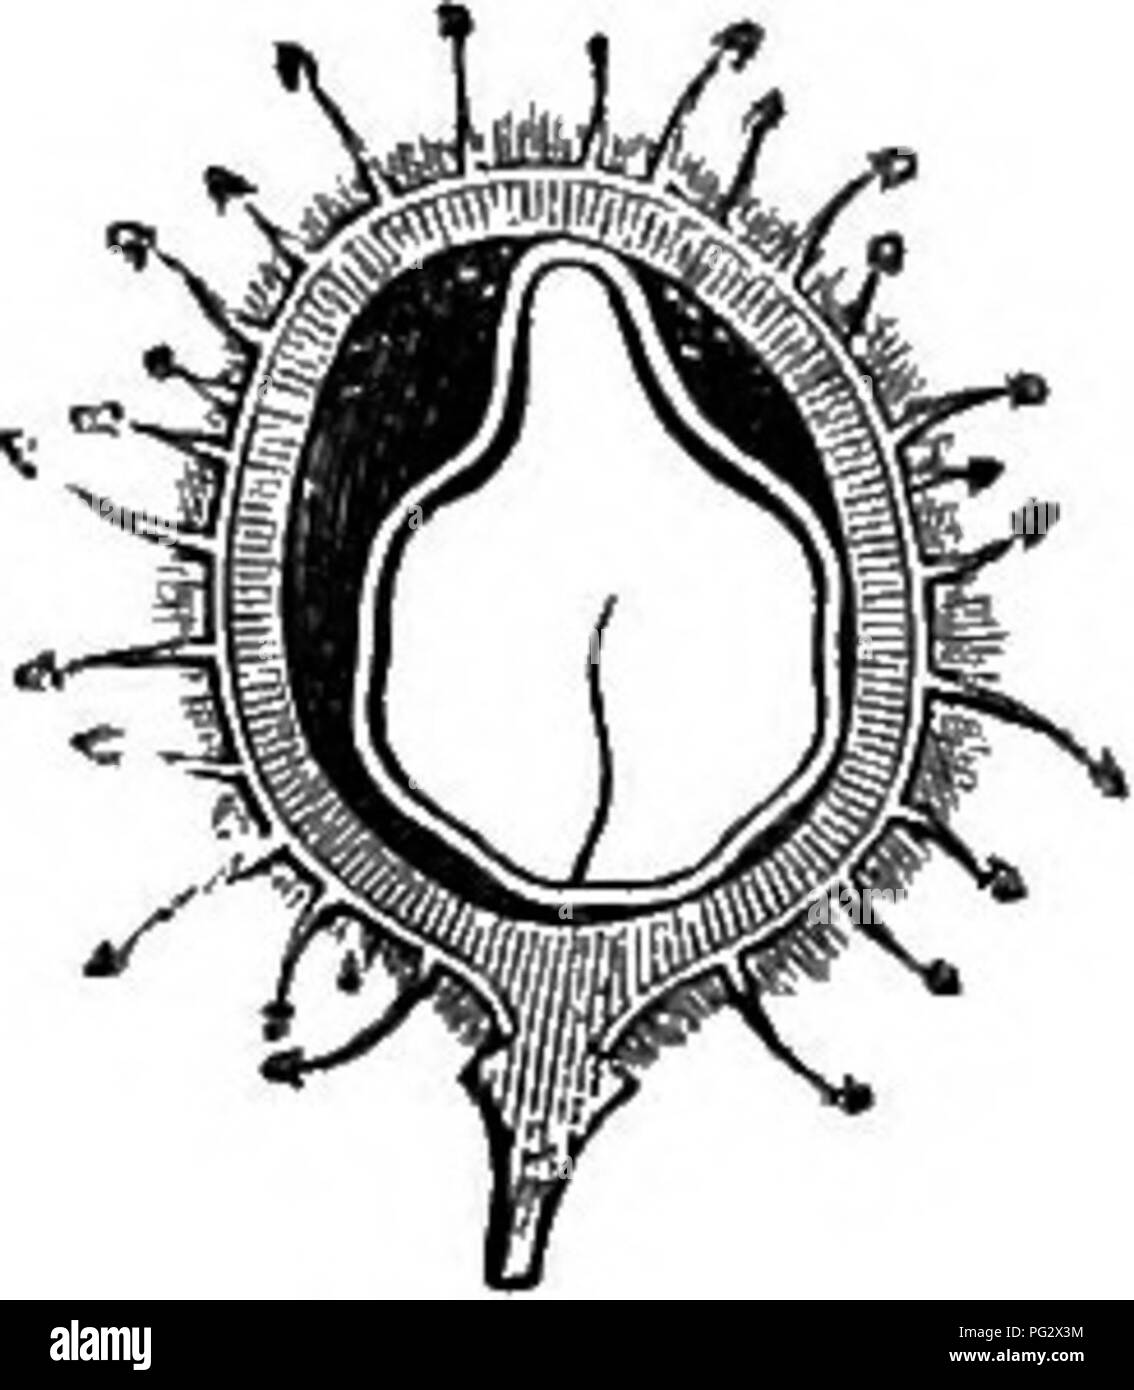 . L'histoire naturelle des plantes. La botanique. Fig. 116. Les fruits (a). Fig. 117. Long. de secte, de fruits. partie basilaire commune united aussi à la base de la corolle. Chaque étamine est composé d'un filament et d'une anthère, basiflxed avec deux cellules latérales dehiscing au sommet par une sorte de vaste entonnoir ou des pores plus ou moins coupé sur les bords, au bas de laquelle ouvrir les deux cellules. Le gynécée est libre et supérieur, constitué d'un ovaire formé au premier de deux cellules, l'une l'autre antérieur, postérieur, mais ce dernier est arrêté au début de son développement.^ devant l'* Voir H. Bte. Dans Adansoniu, xi. 18.. Moyen Banque D'Images